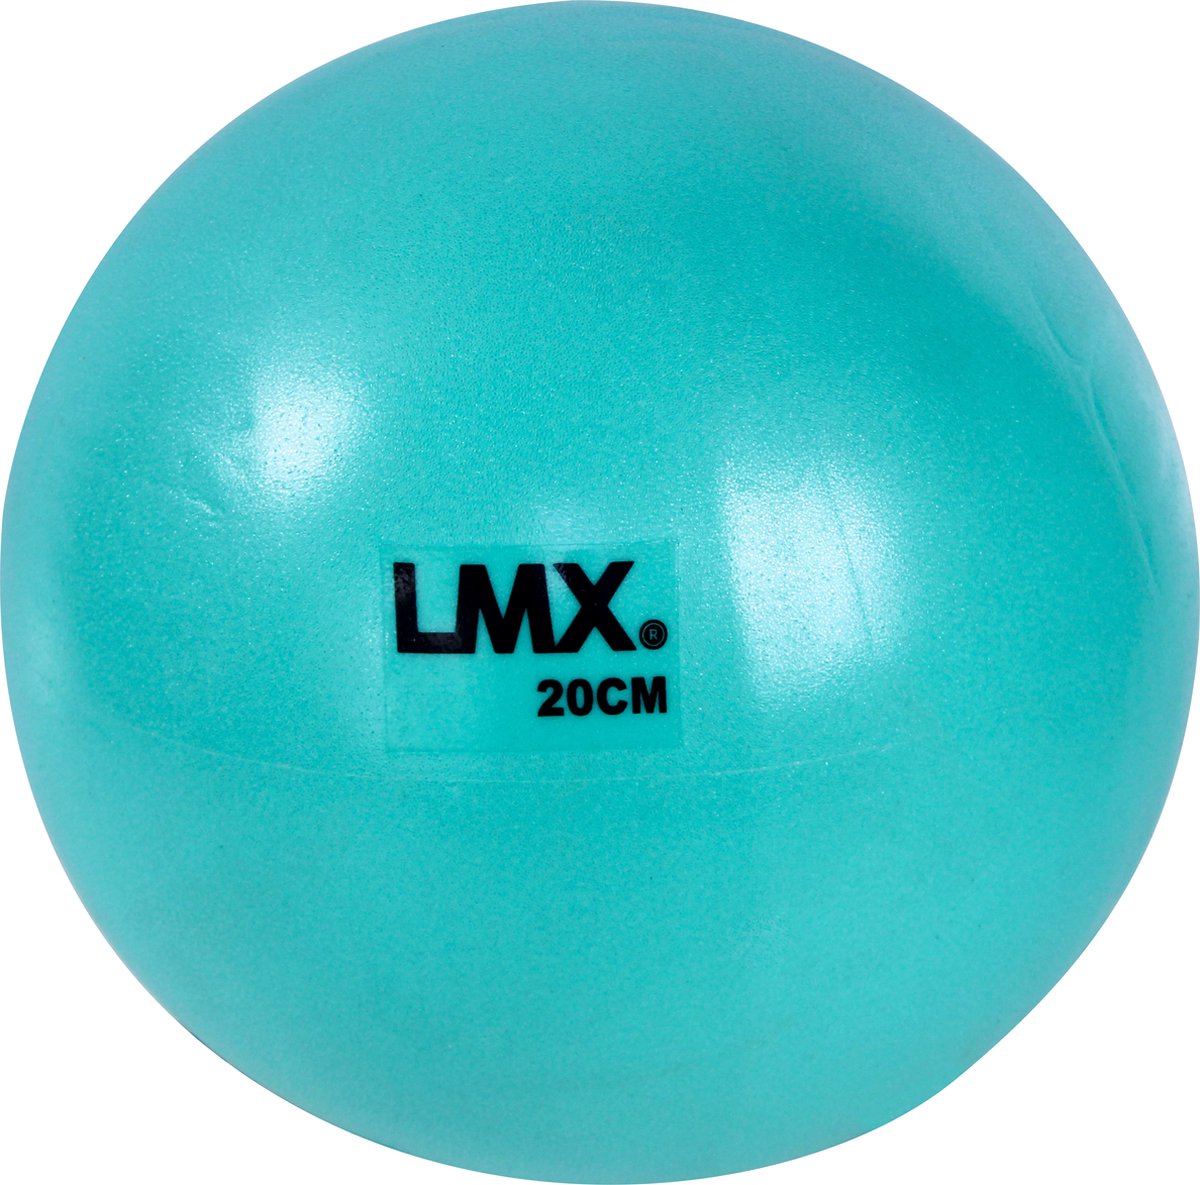 LMX. Pilates ball | Ø 20cm | Blauw